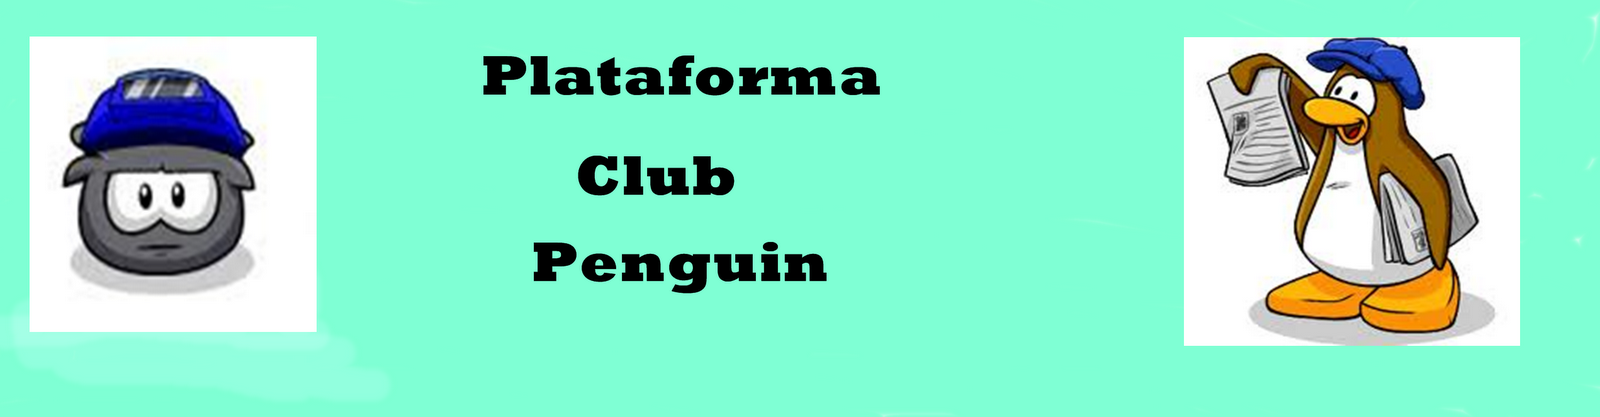 Plataforma Club Penguin